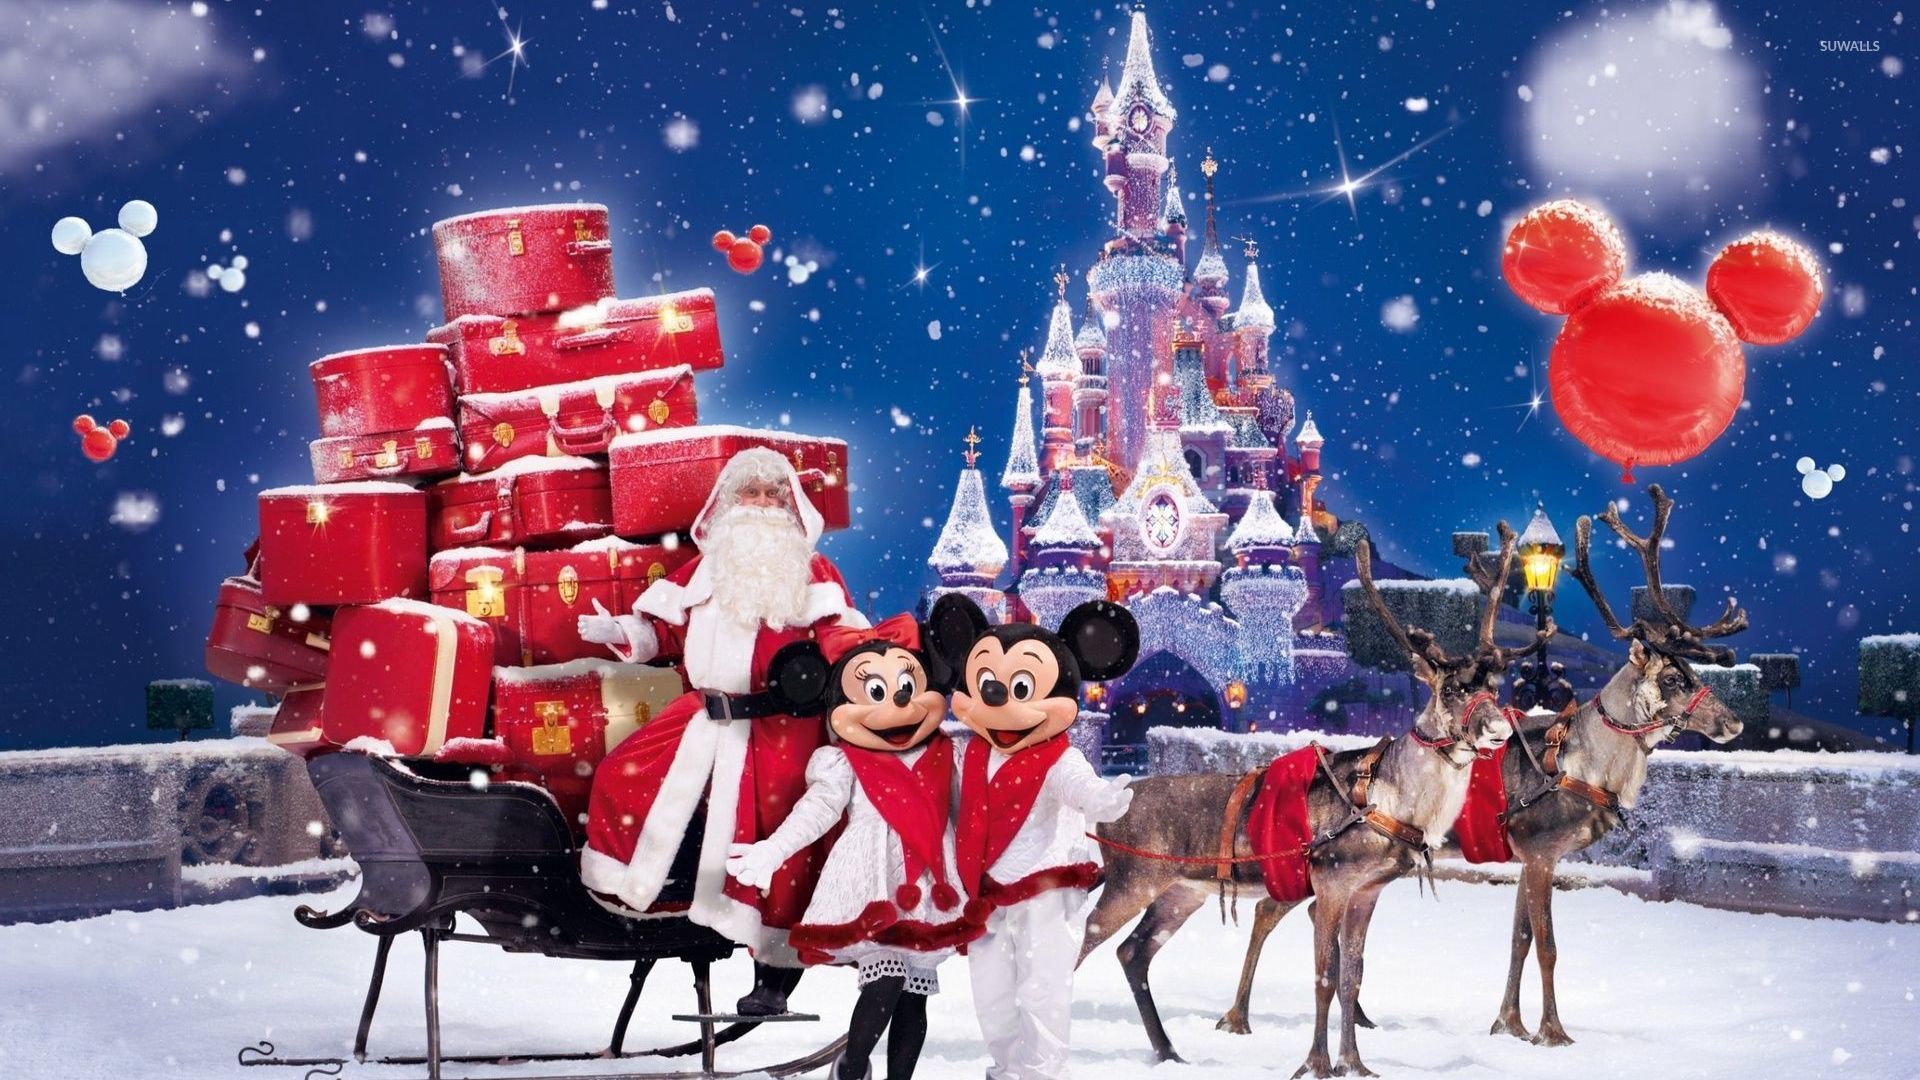 Santa Claus bringing gifts in a Disneyland park wallpaper - Holiday ...